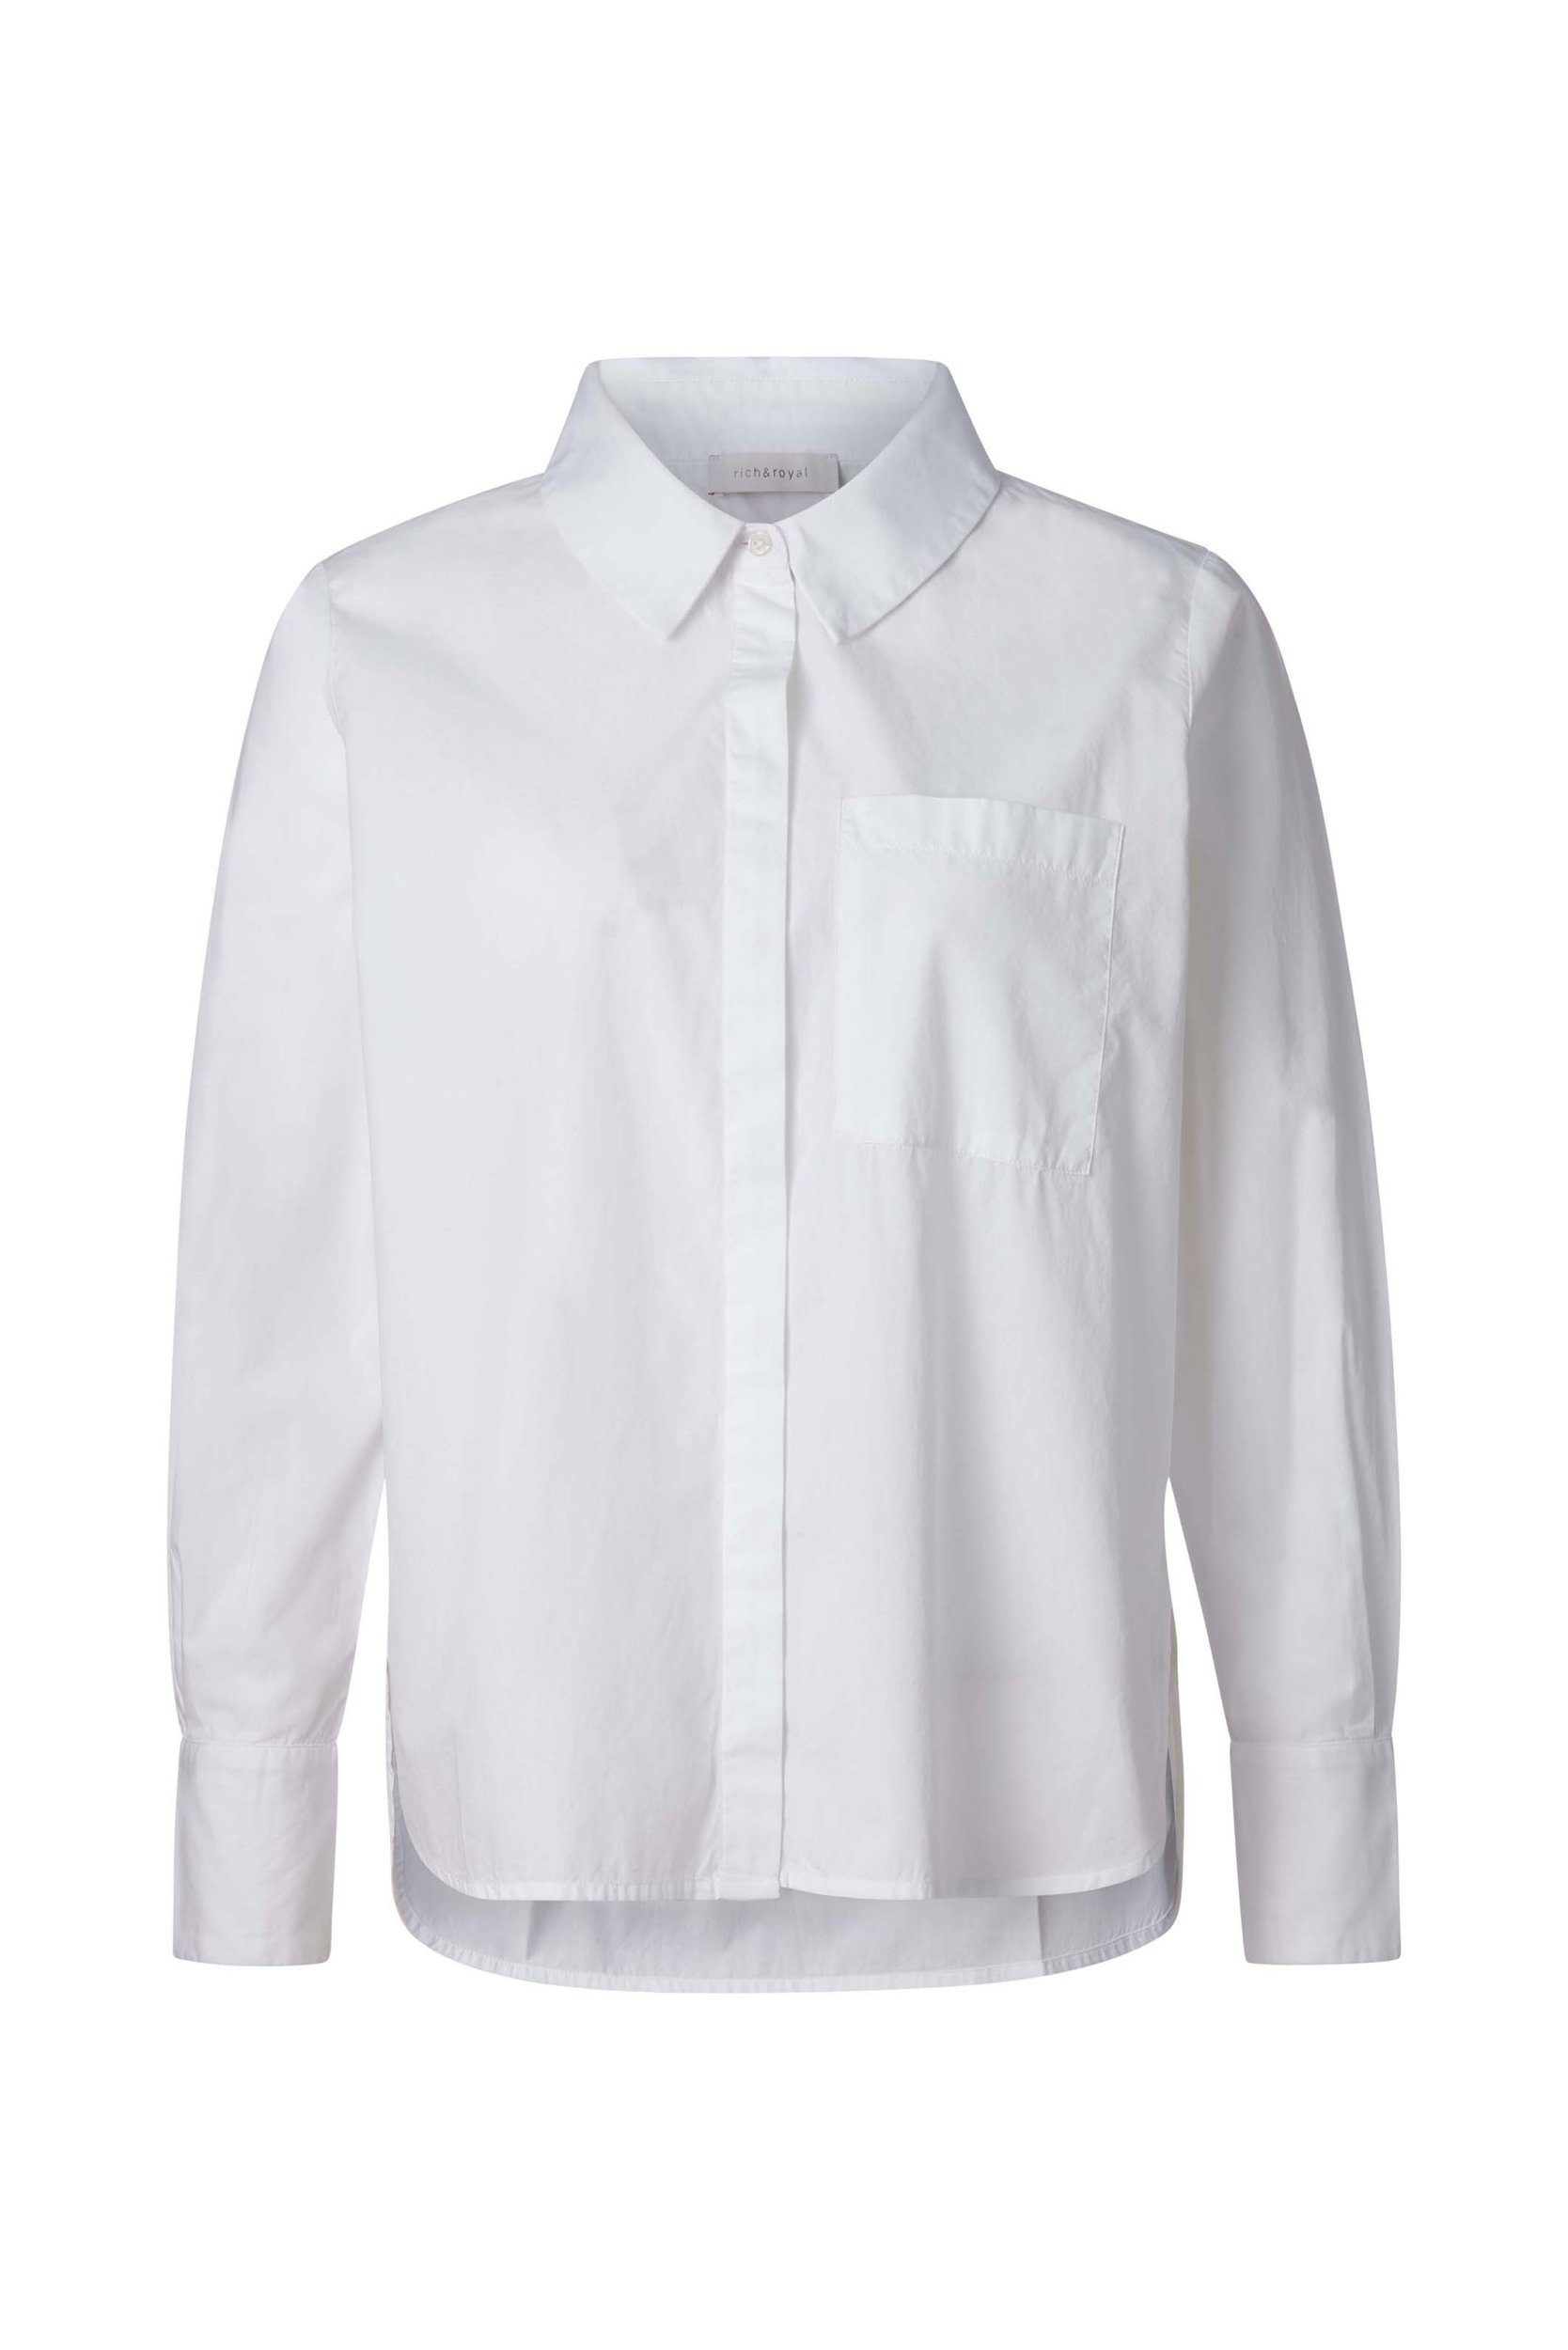 Rich & Royal Blusentop Basic cotton blouse